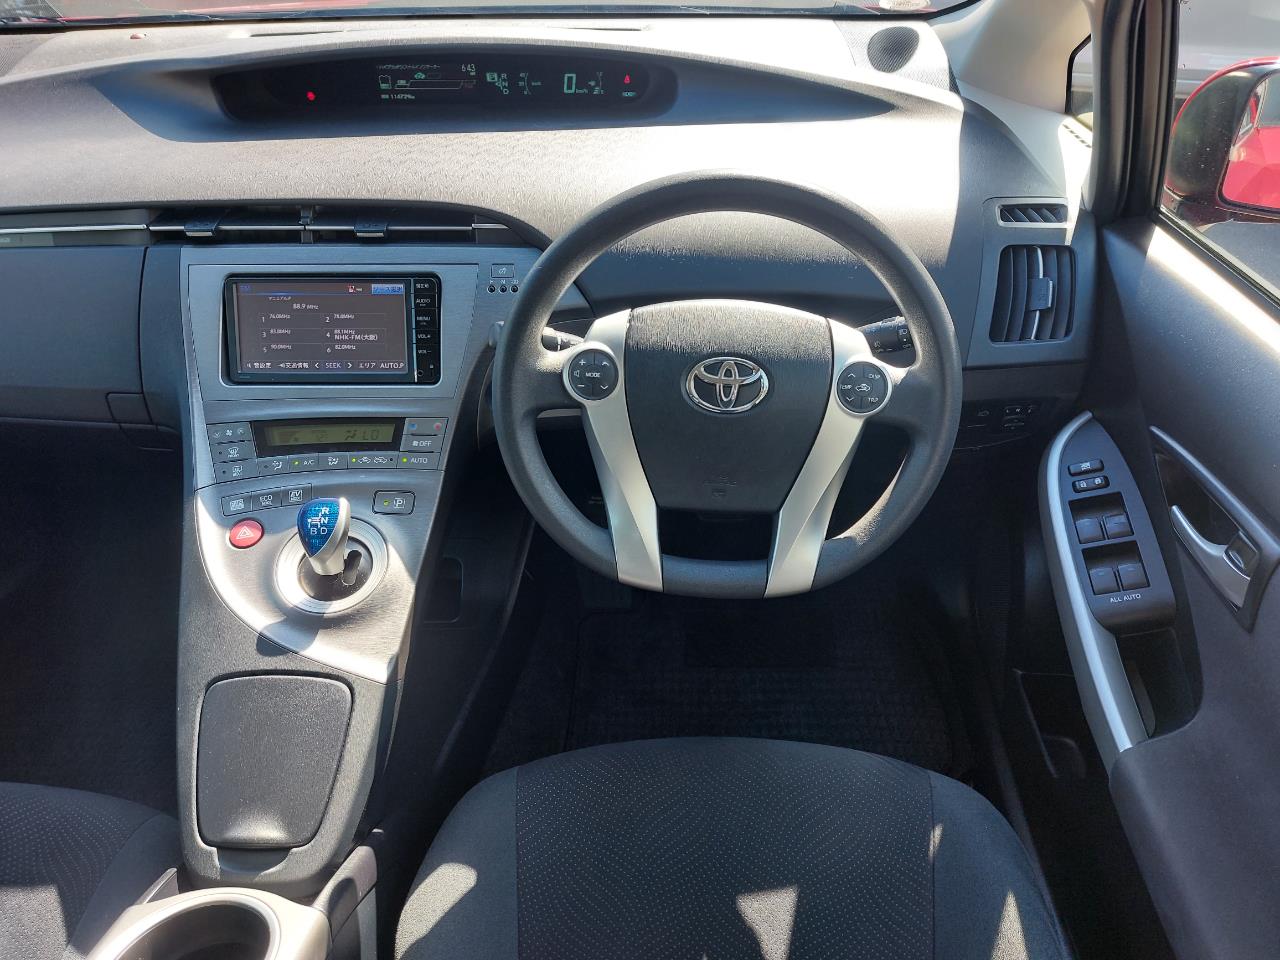 2015 Toyota Prius 